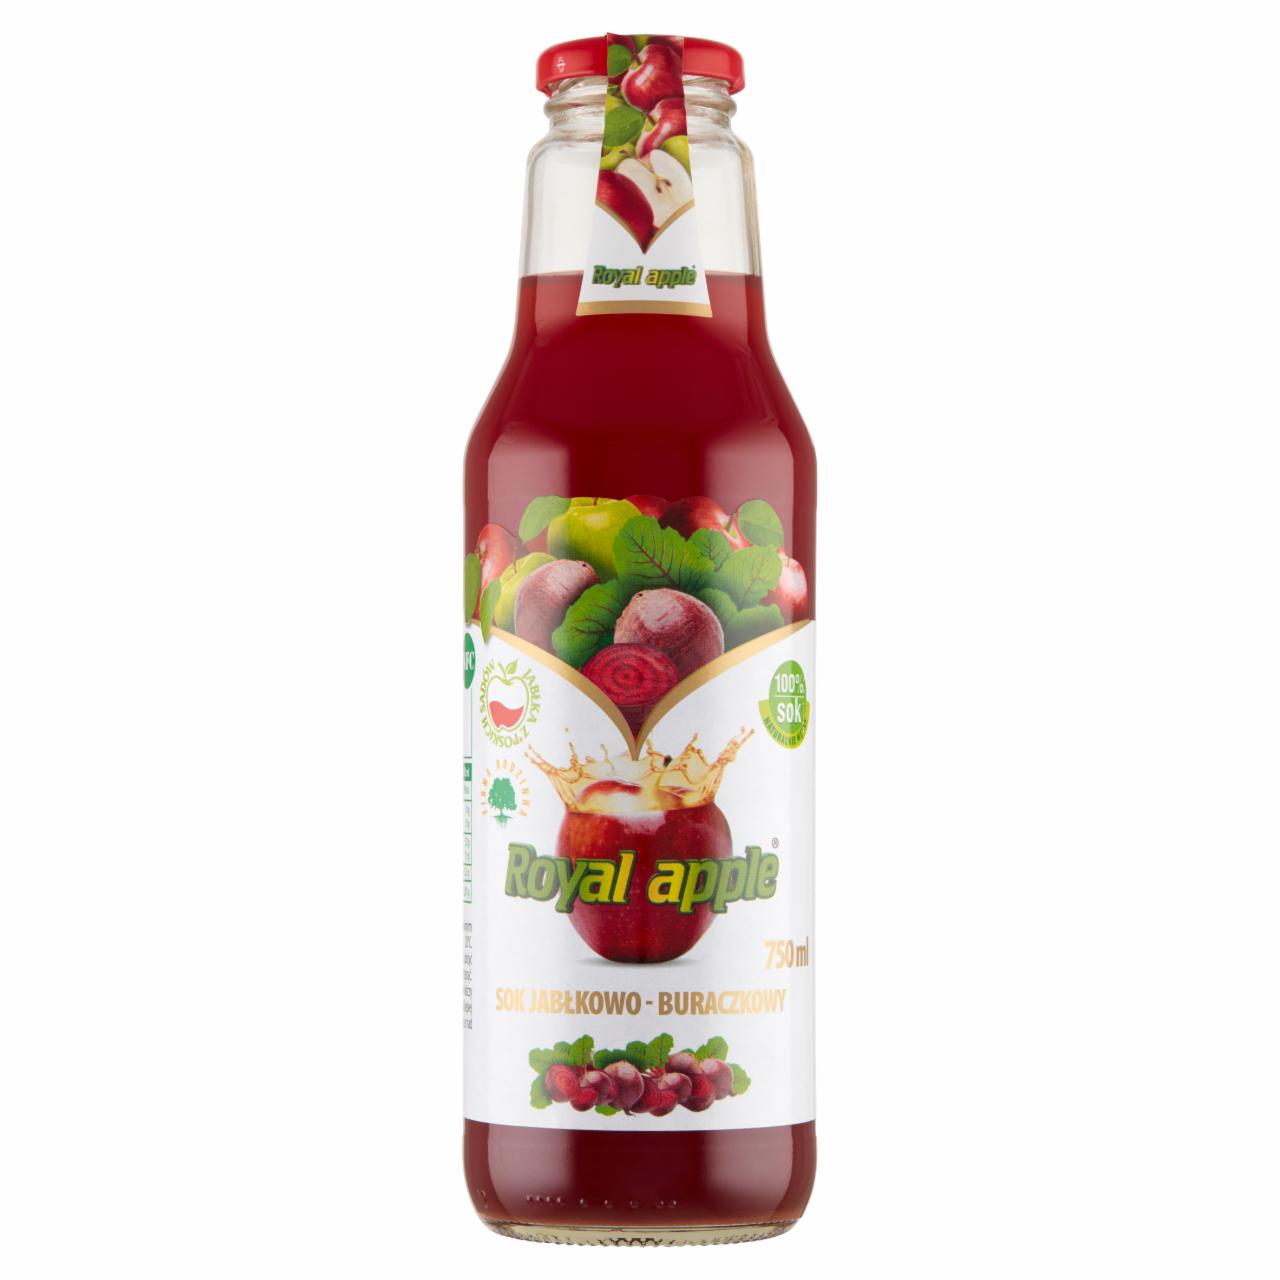 Photo - Royal apple Apple-Beetroot Juice 750 ml